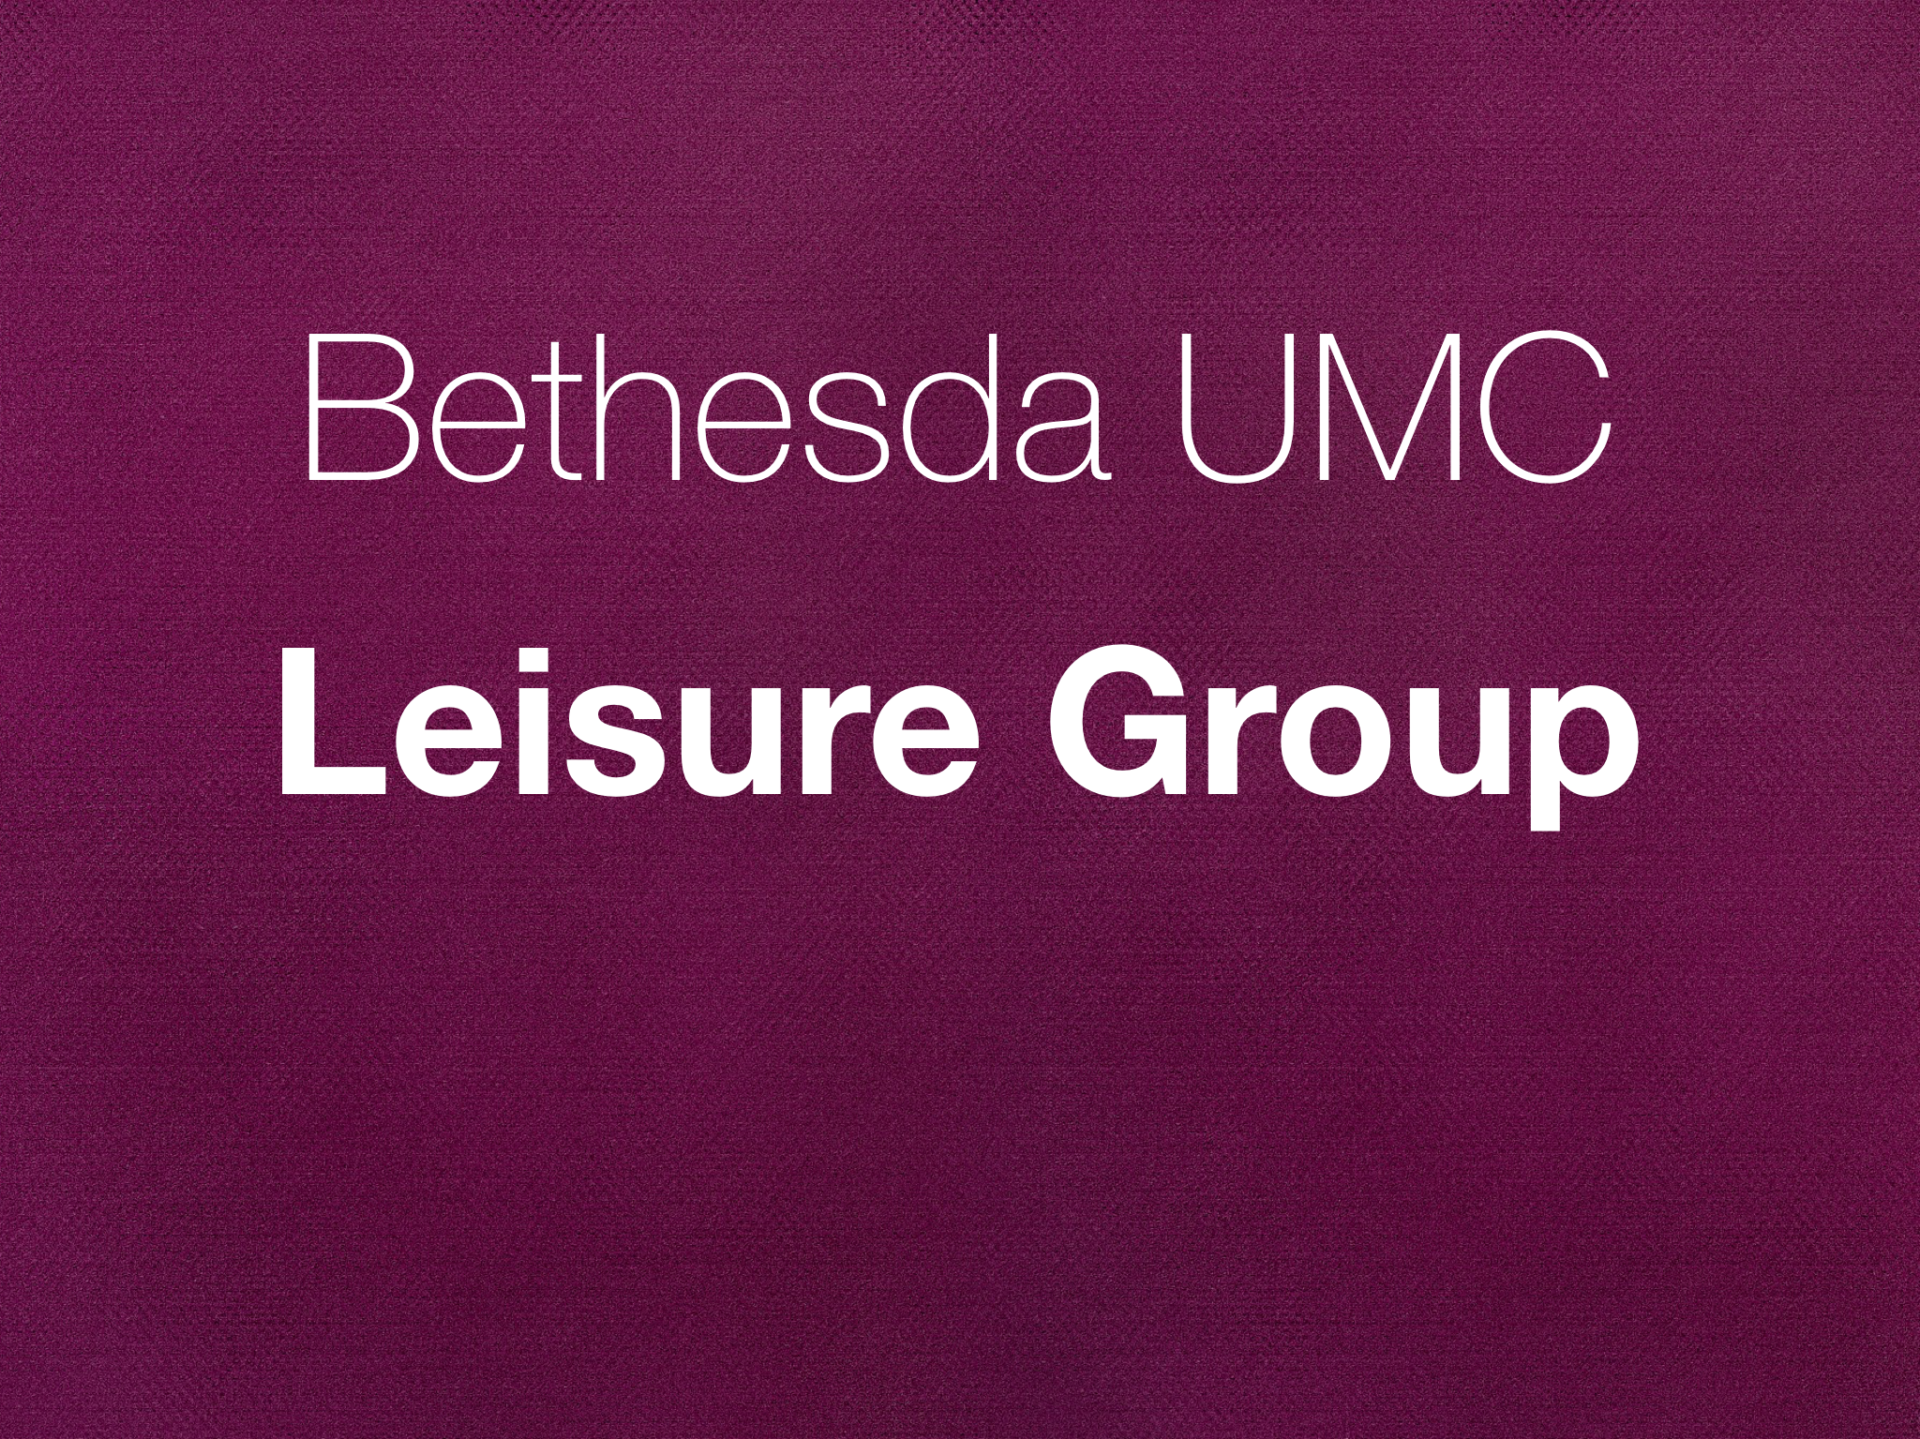 Leisure Group News Quarter 2